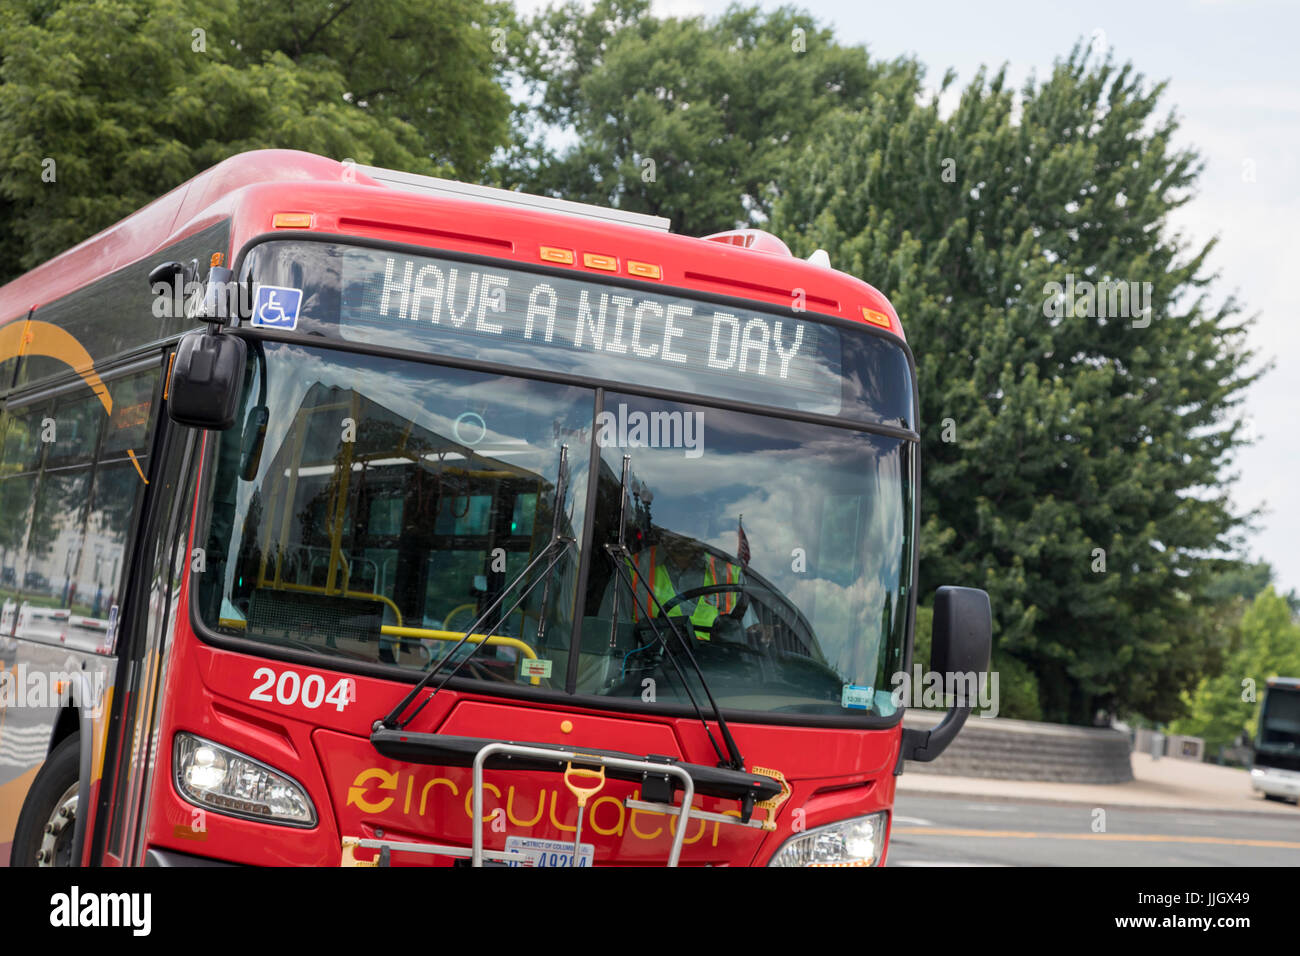 Washington, DC - Un bus deseos del público un "buen día". Foto de stock